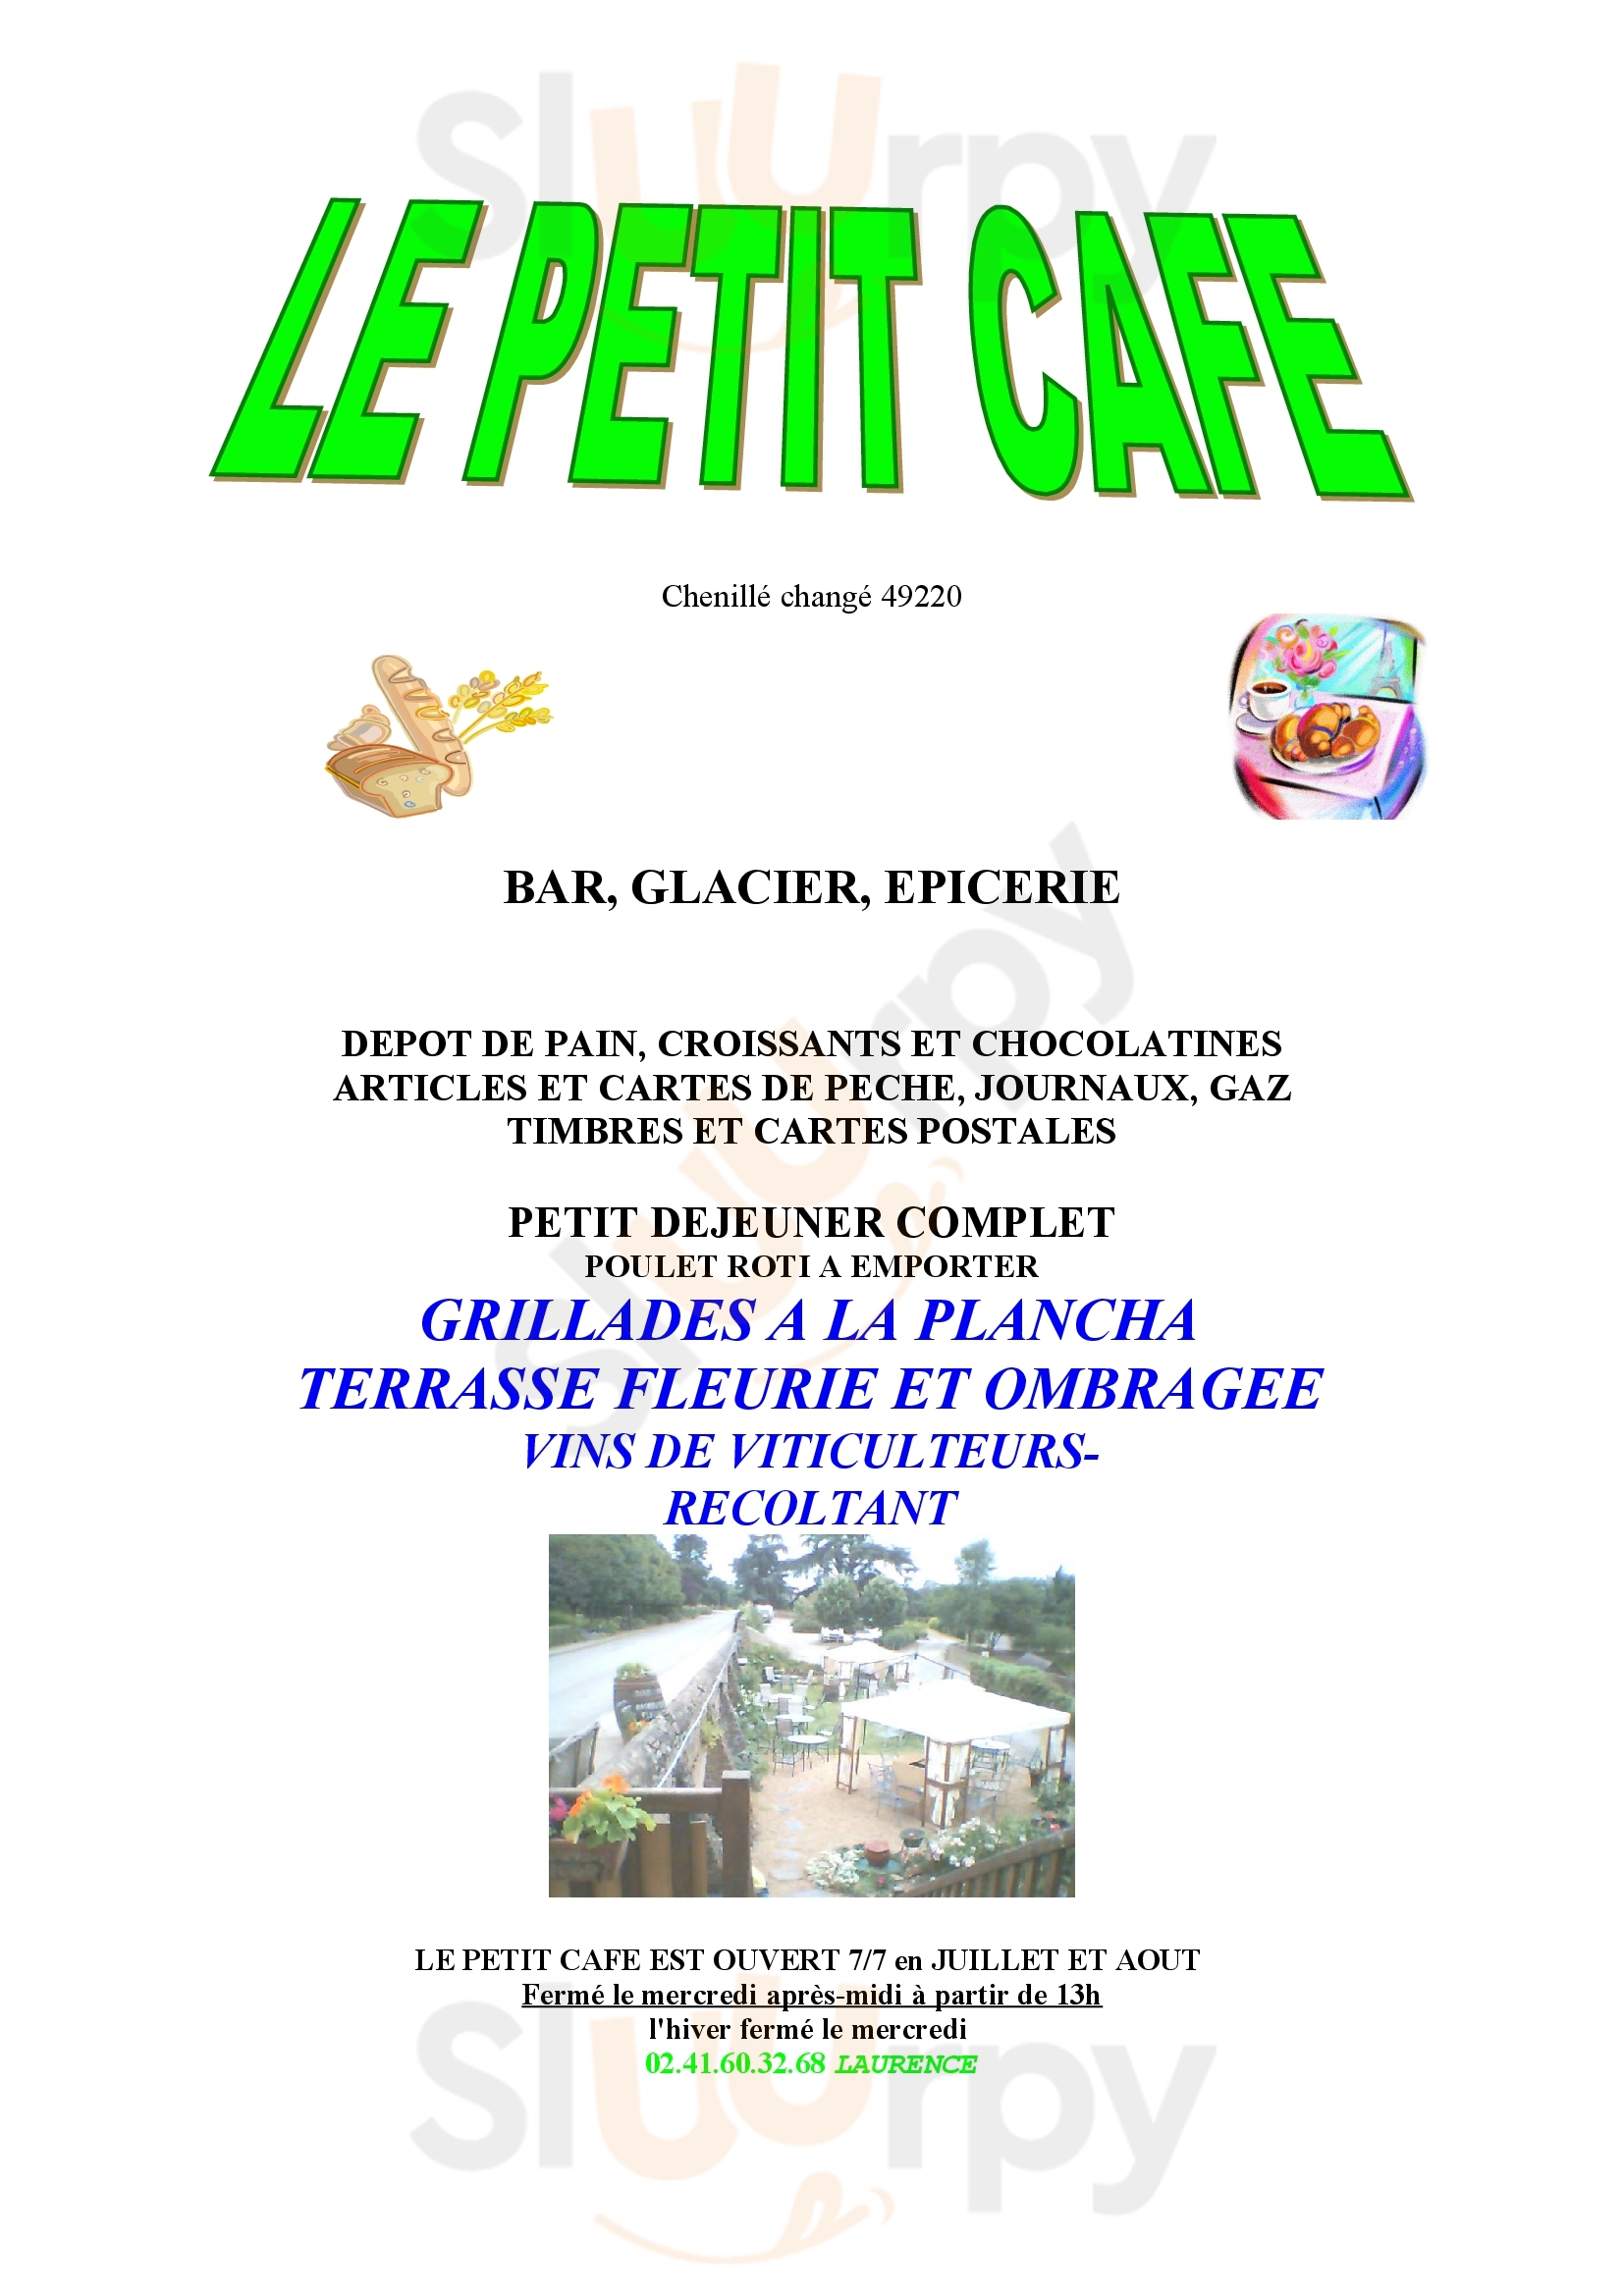 Le Petit Café Chenille-Change Menu - 1